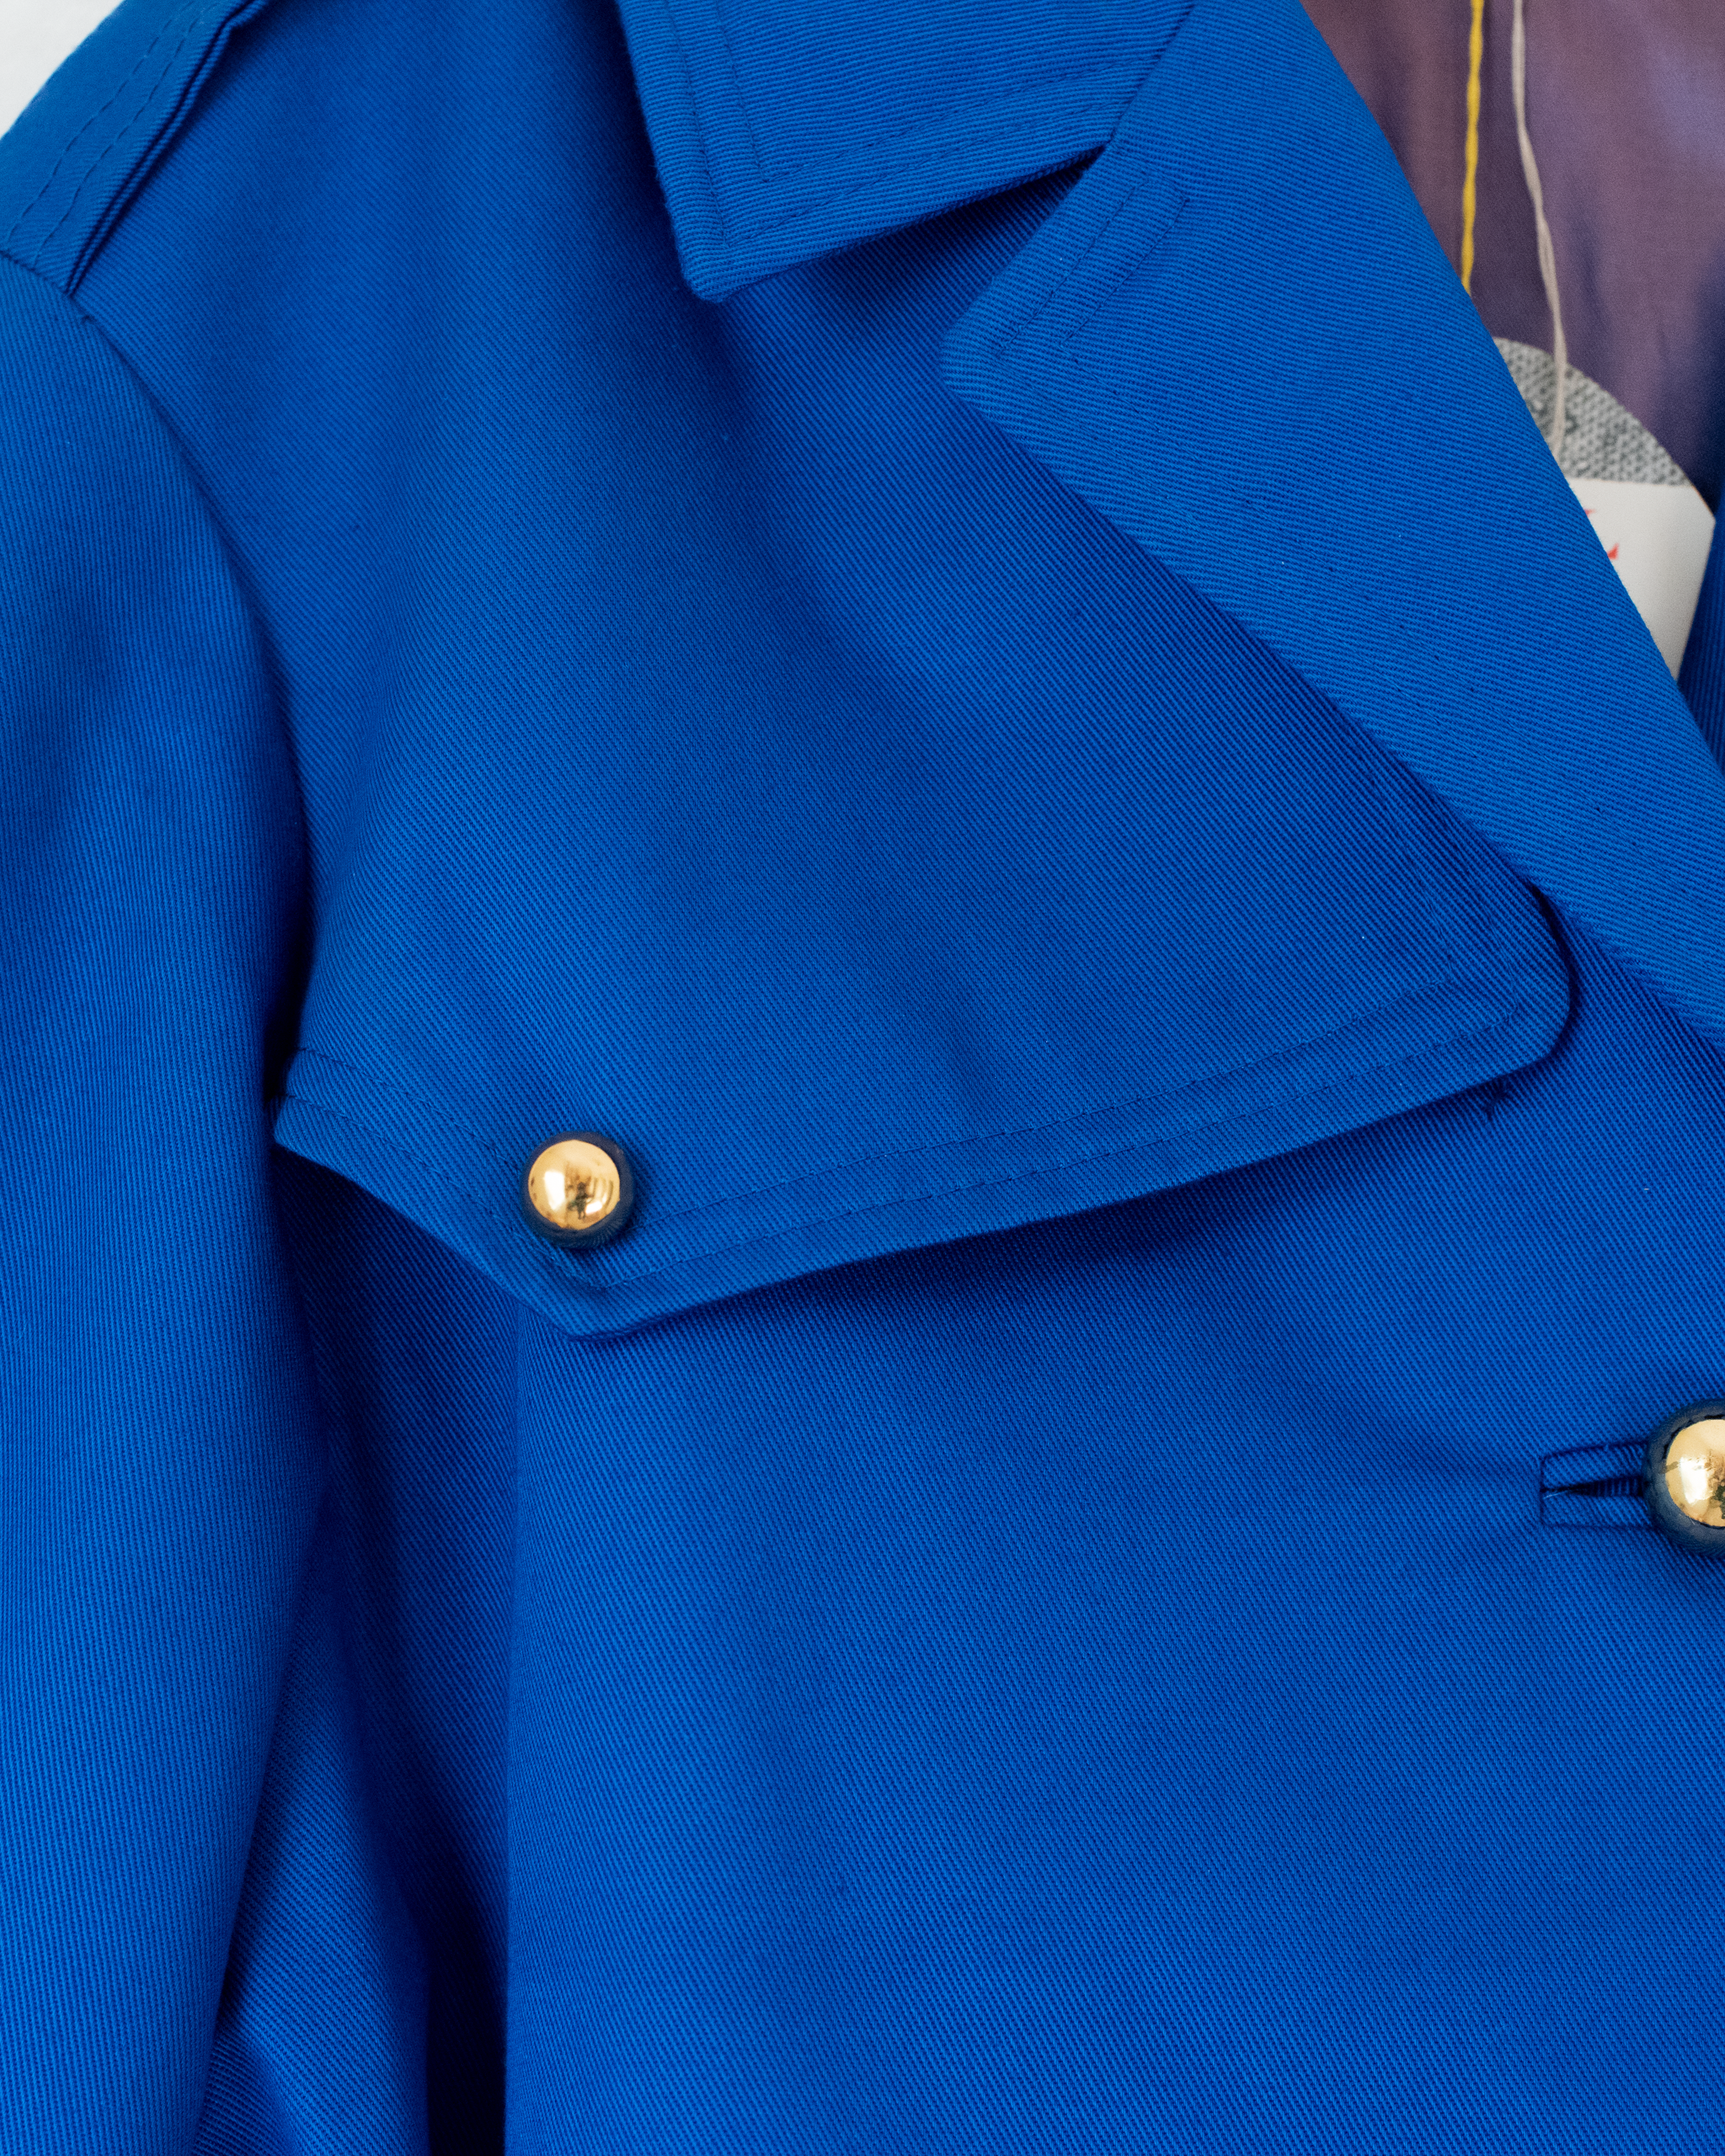 מעיל כחול רויאל מהסבנטיז | דד סטוק בלגי | 10-11 שנים